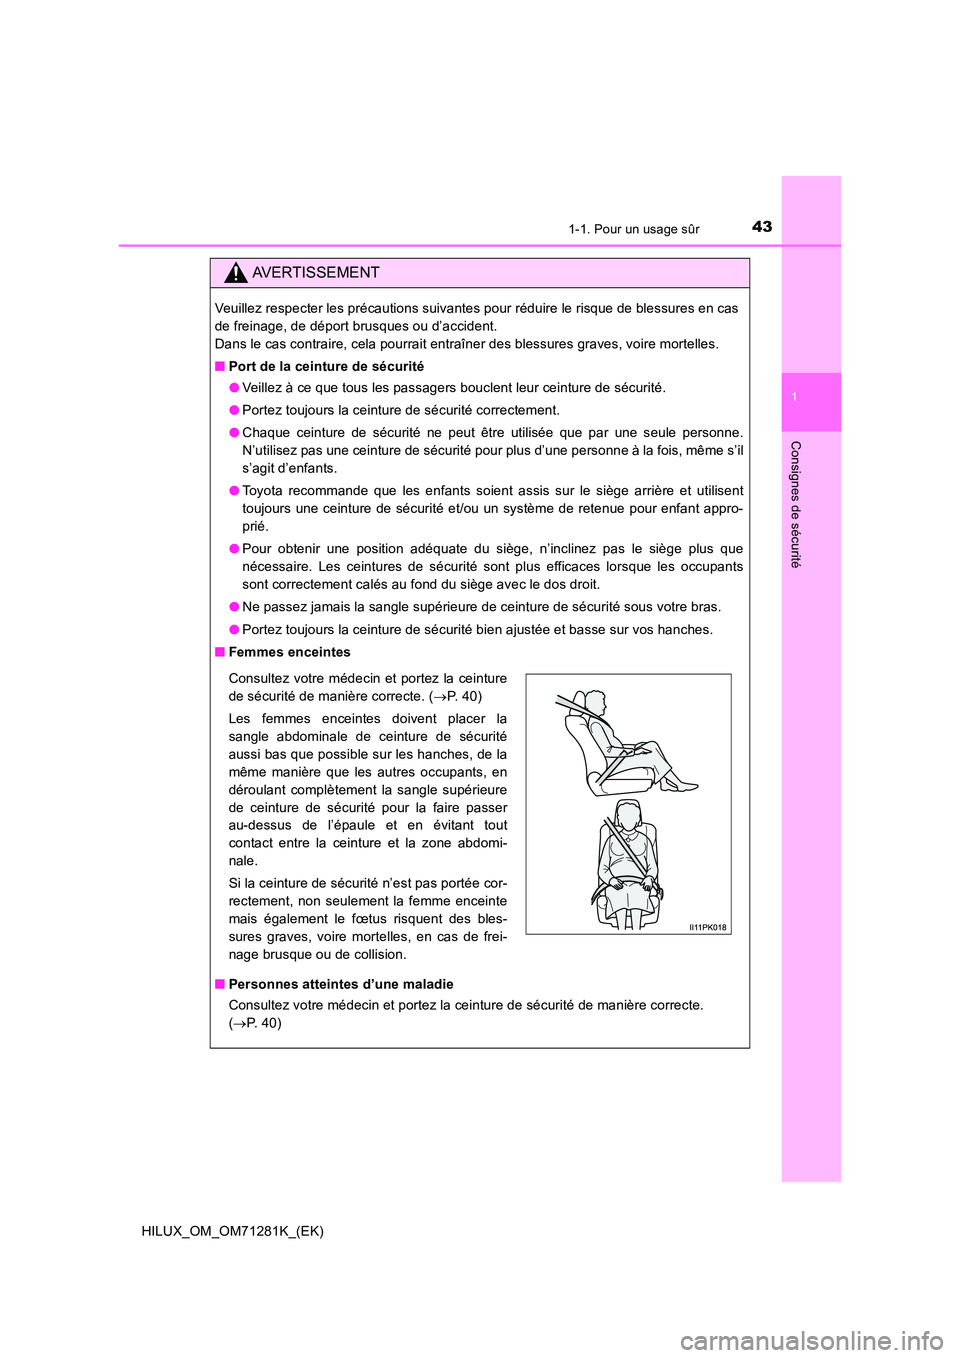 TOYOTA HILUX 2020  Notices Demploi (in French) 431-1. Pour un usage sûr
1
HILUX_OM_OM71281K_(EK)
Consignes de sécurité
AVERTISSEMENT
Veuillez respecter les précautions suivantes pour réduire le risque de blessures en cas 
de freinage, de dép